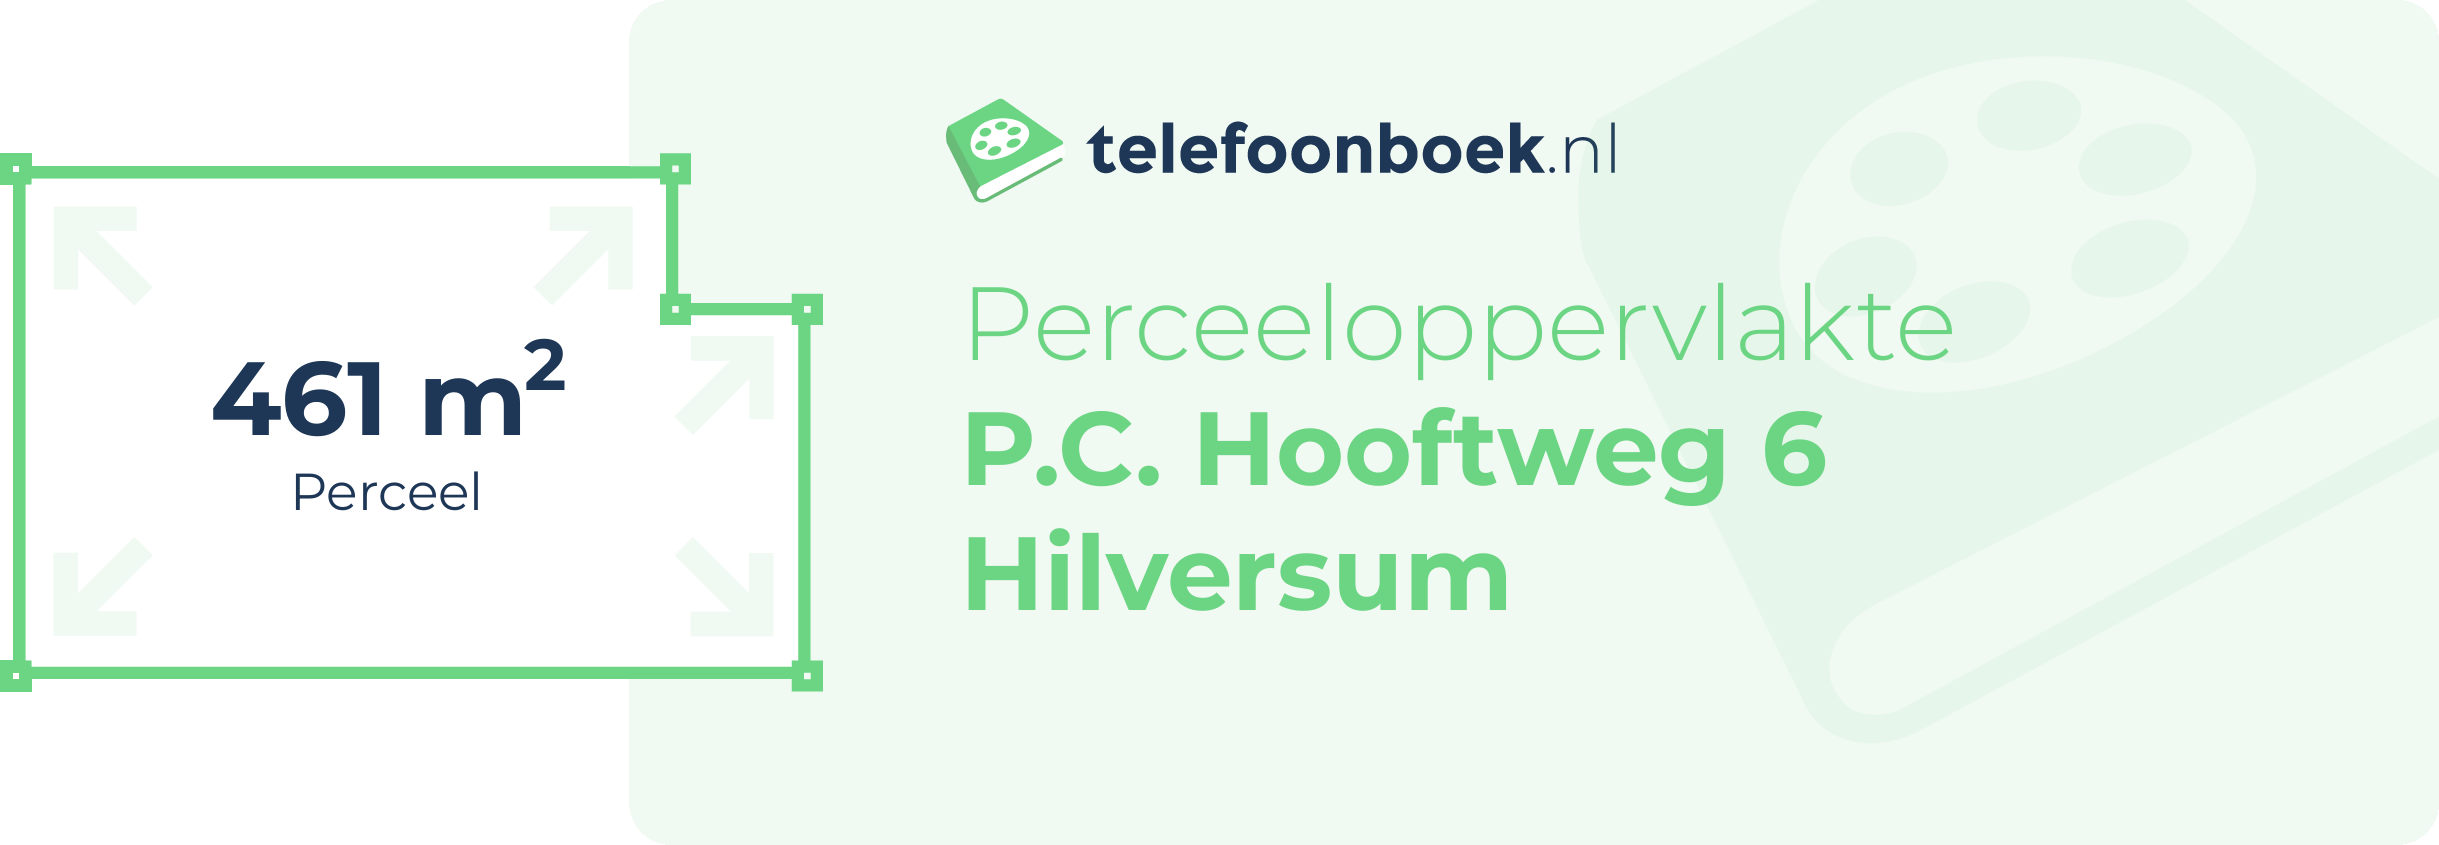 Perceeloppervlakte P.C. Hooftweg 6 Hilversum